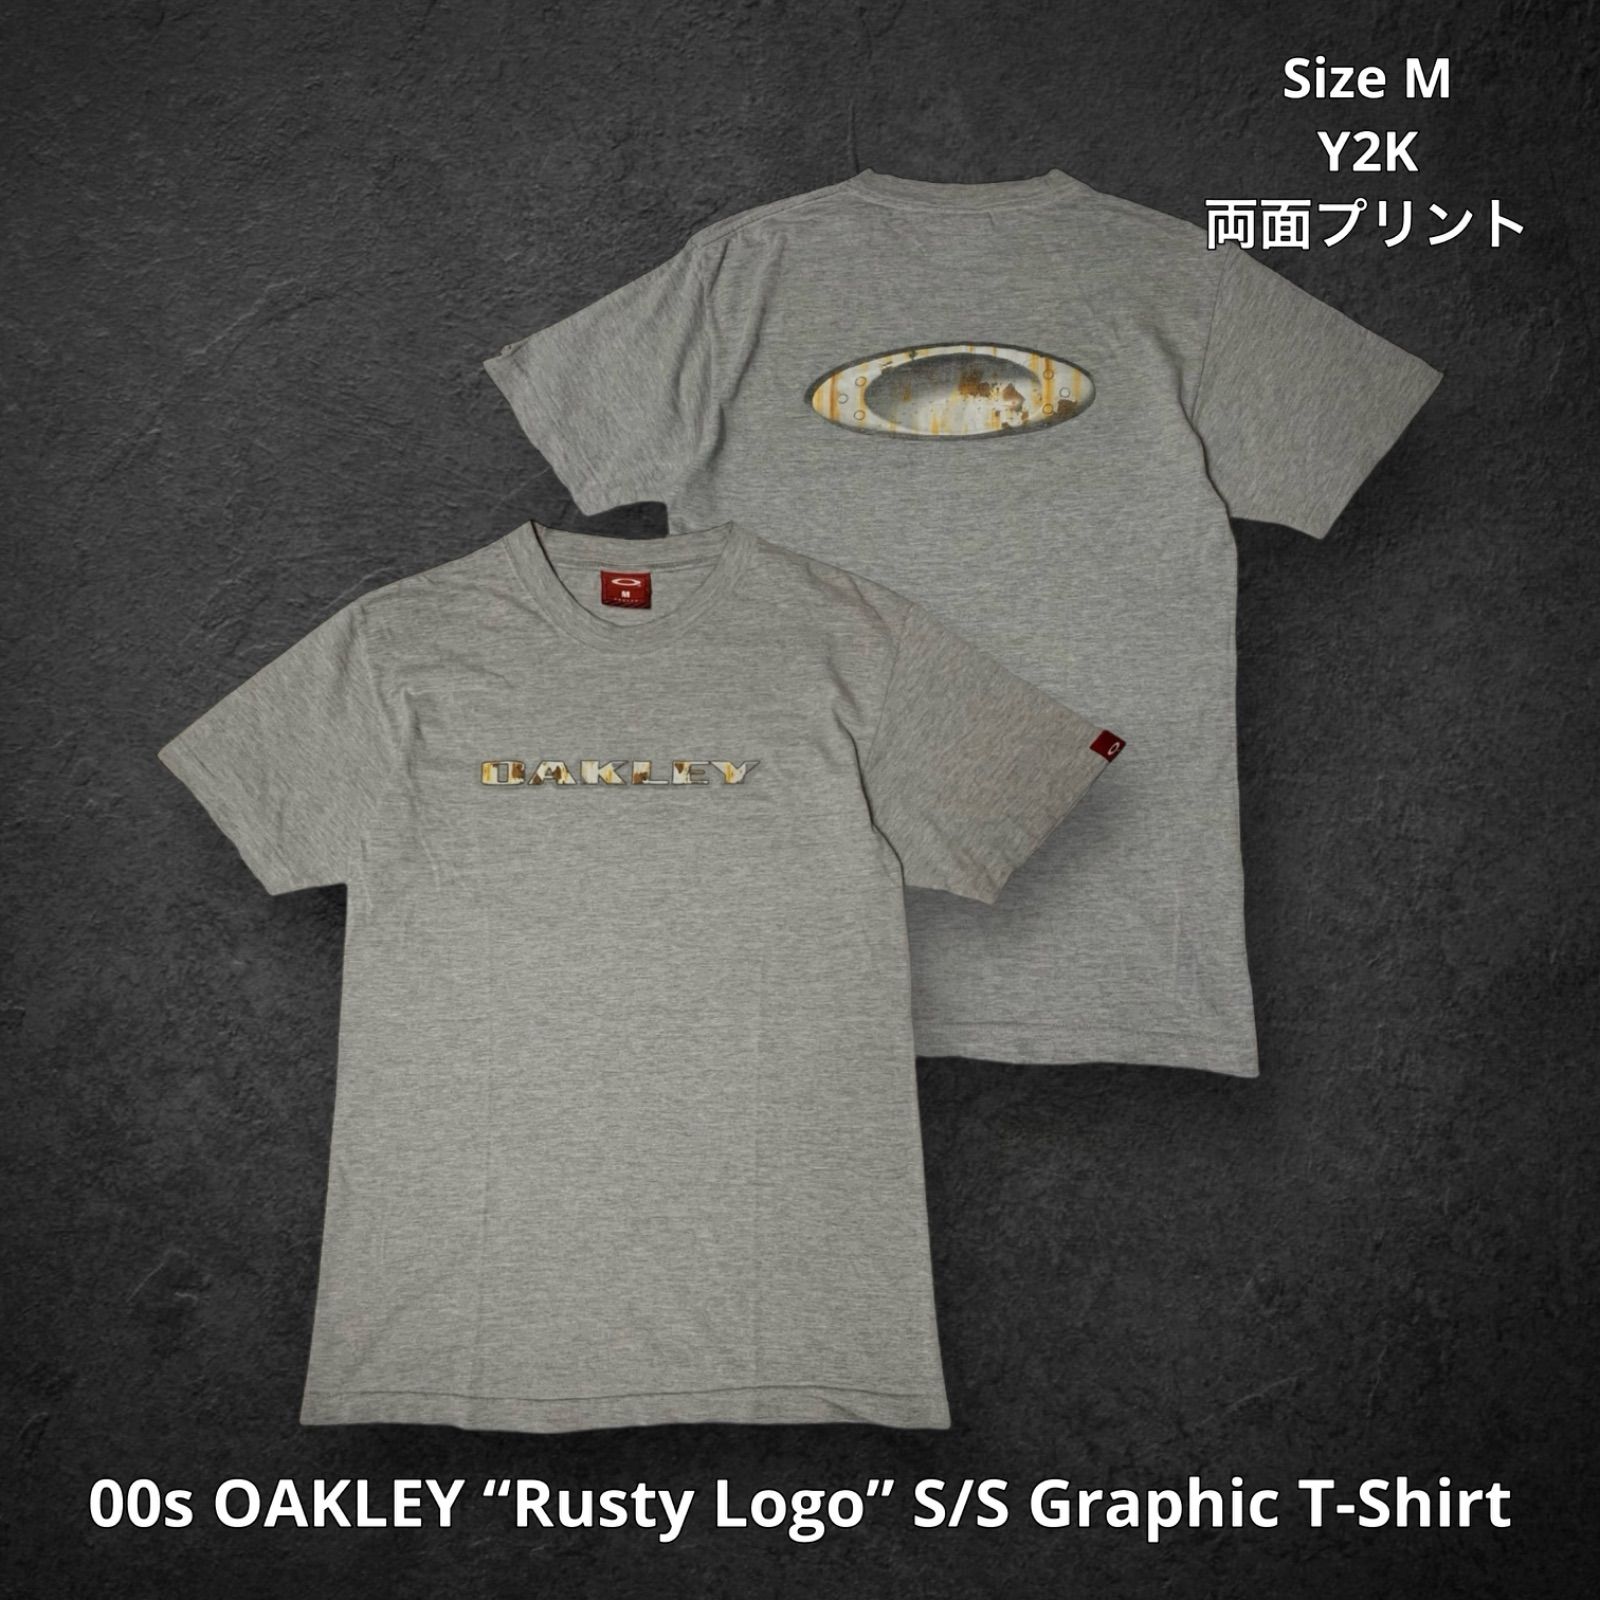 00s OAKLEY “Rusty Logo” S/S Graphic T-Shirt オークリー ロゴグラフィックTシャツ 半袖 グレー Mサイズ  両面プリント グランジ 錆 Y2K テックウェア ストリート アーカイブ